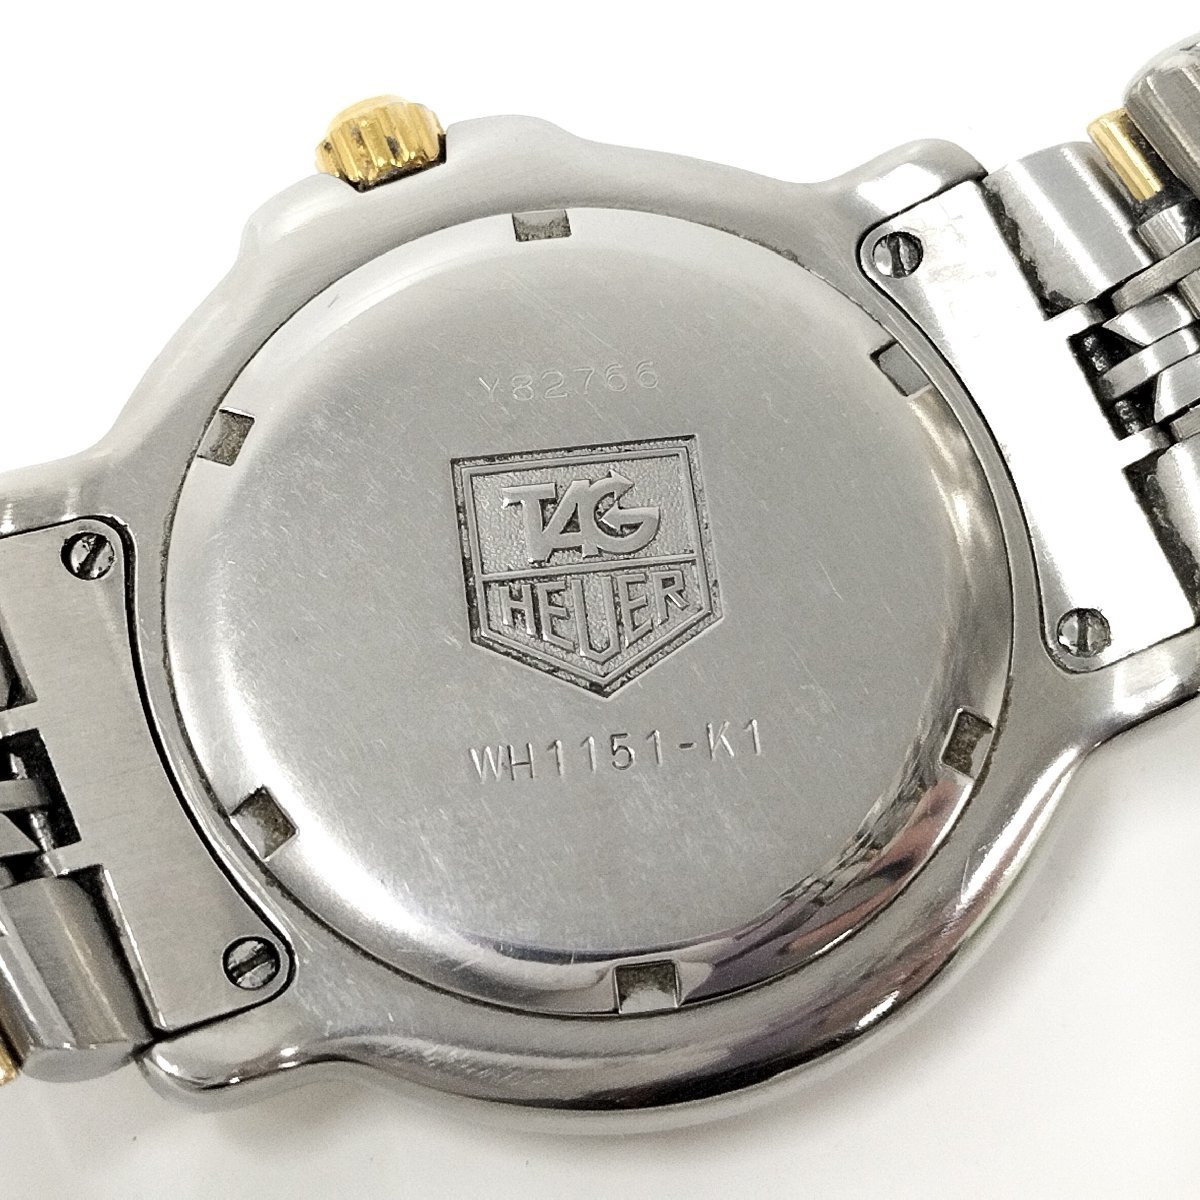 ●現状品 TAG HEUER タグホイヤー WH1151-K1 メンズ腕時計 ホワイト文字盤 クォーツ デイト 中古[ne]u498_画像7